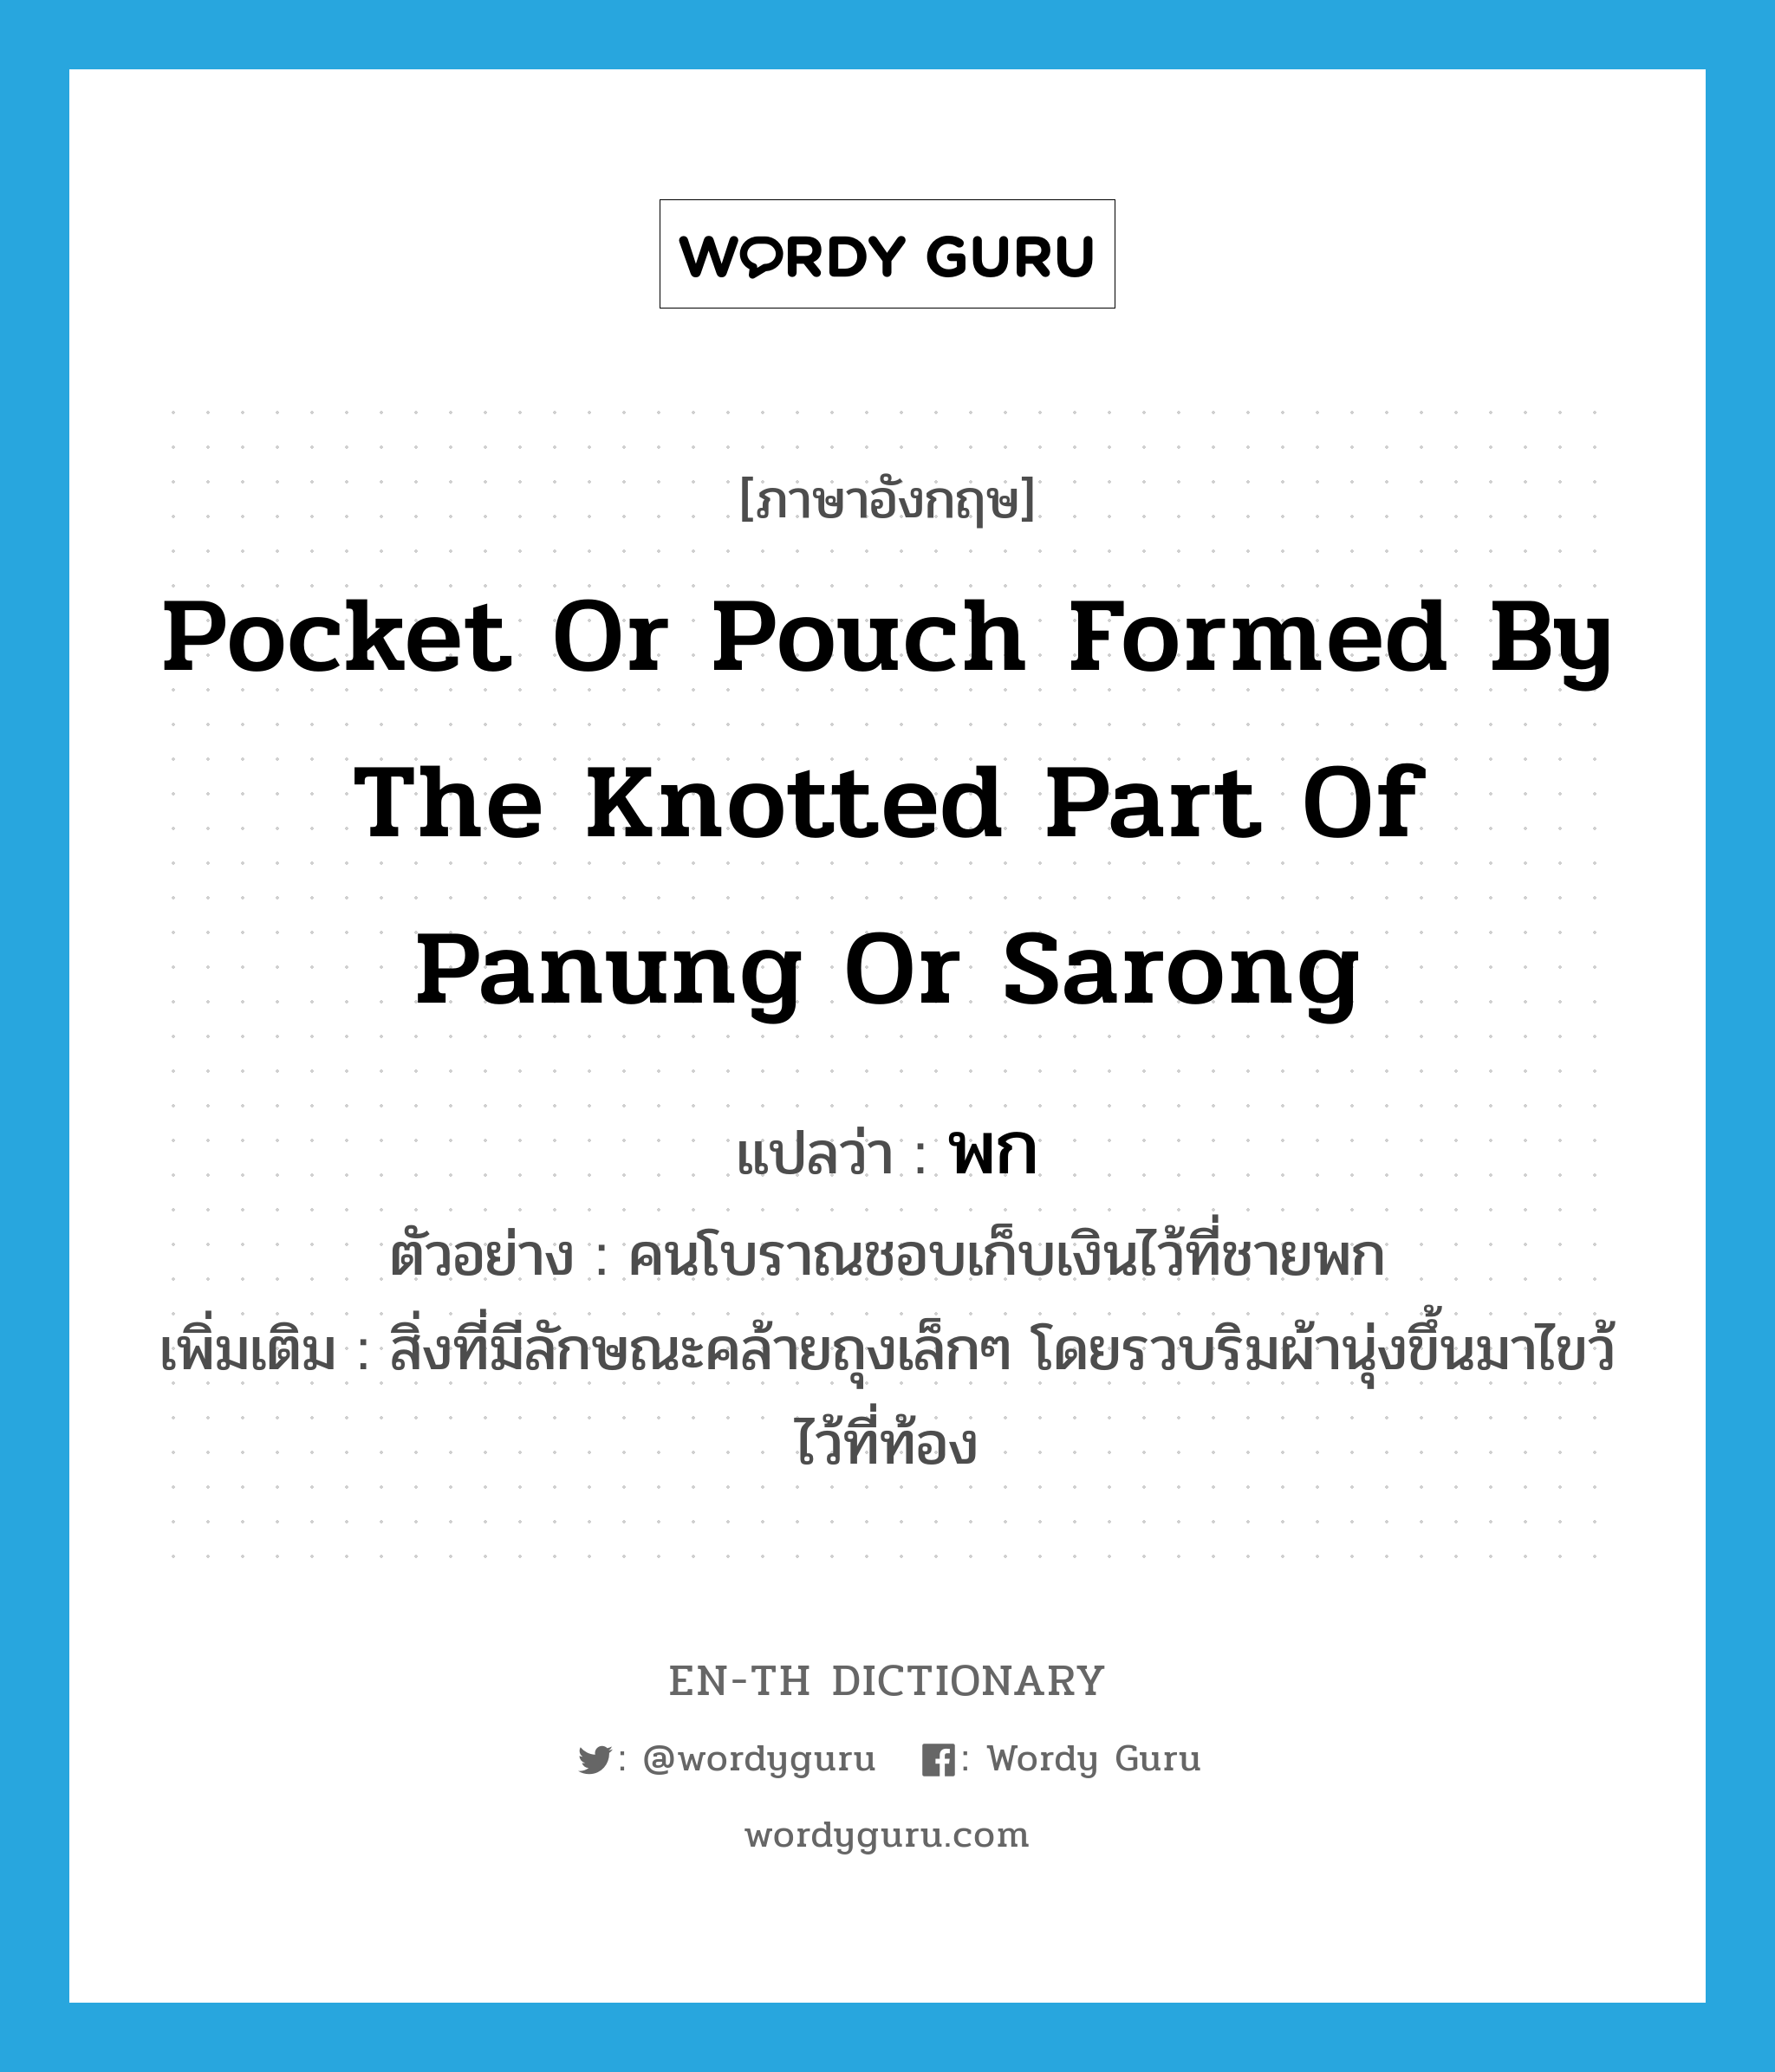 พก ภาษาอังกฤษ?, คำศัพท์ภาษาอังกฤษ พก แปลว่า pocket or pouch formed by the knotted part of panung or sarong ประเภท N ตัวอย่าง คนโบราณชอบเก็บเงินไว้ที่ชายพก เพิ่มเติม สิ่งที่มีลักษณะคล้ายถุงเล็กๆ โดยรวบริมผ้านุ่งขึ้นมาไขว้ไว้ที่ท้อง หมวด N